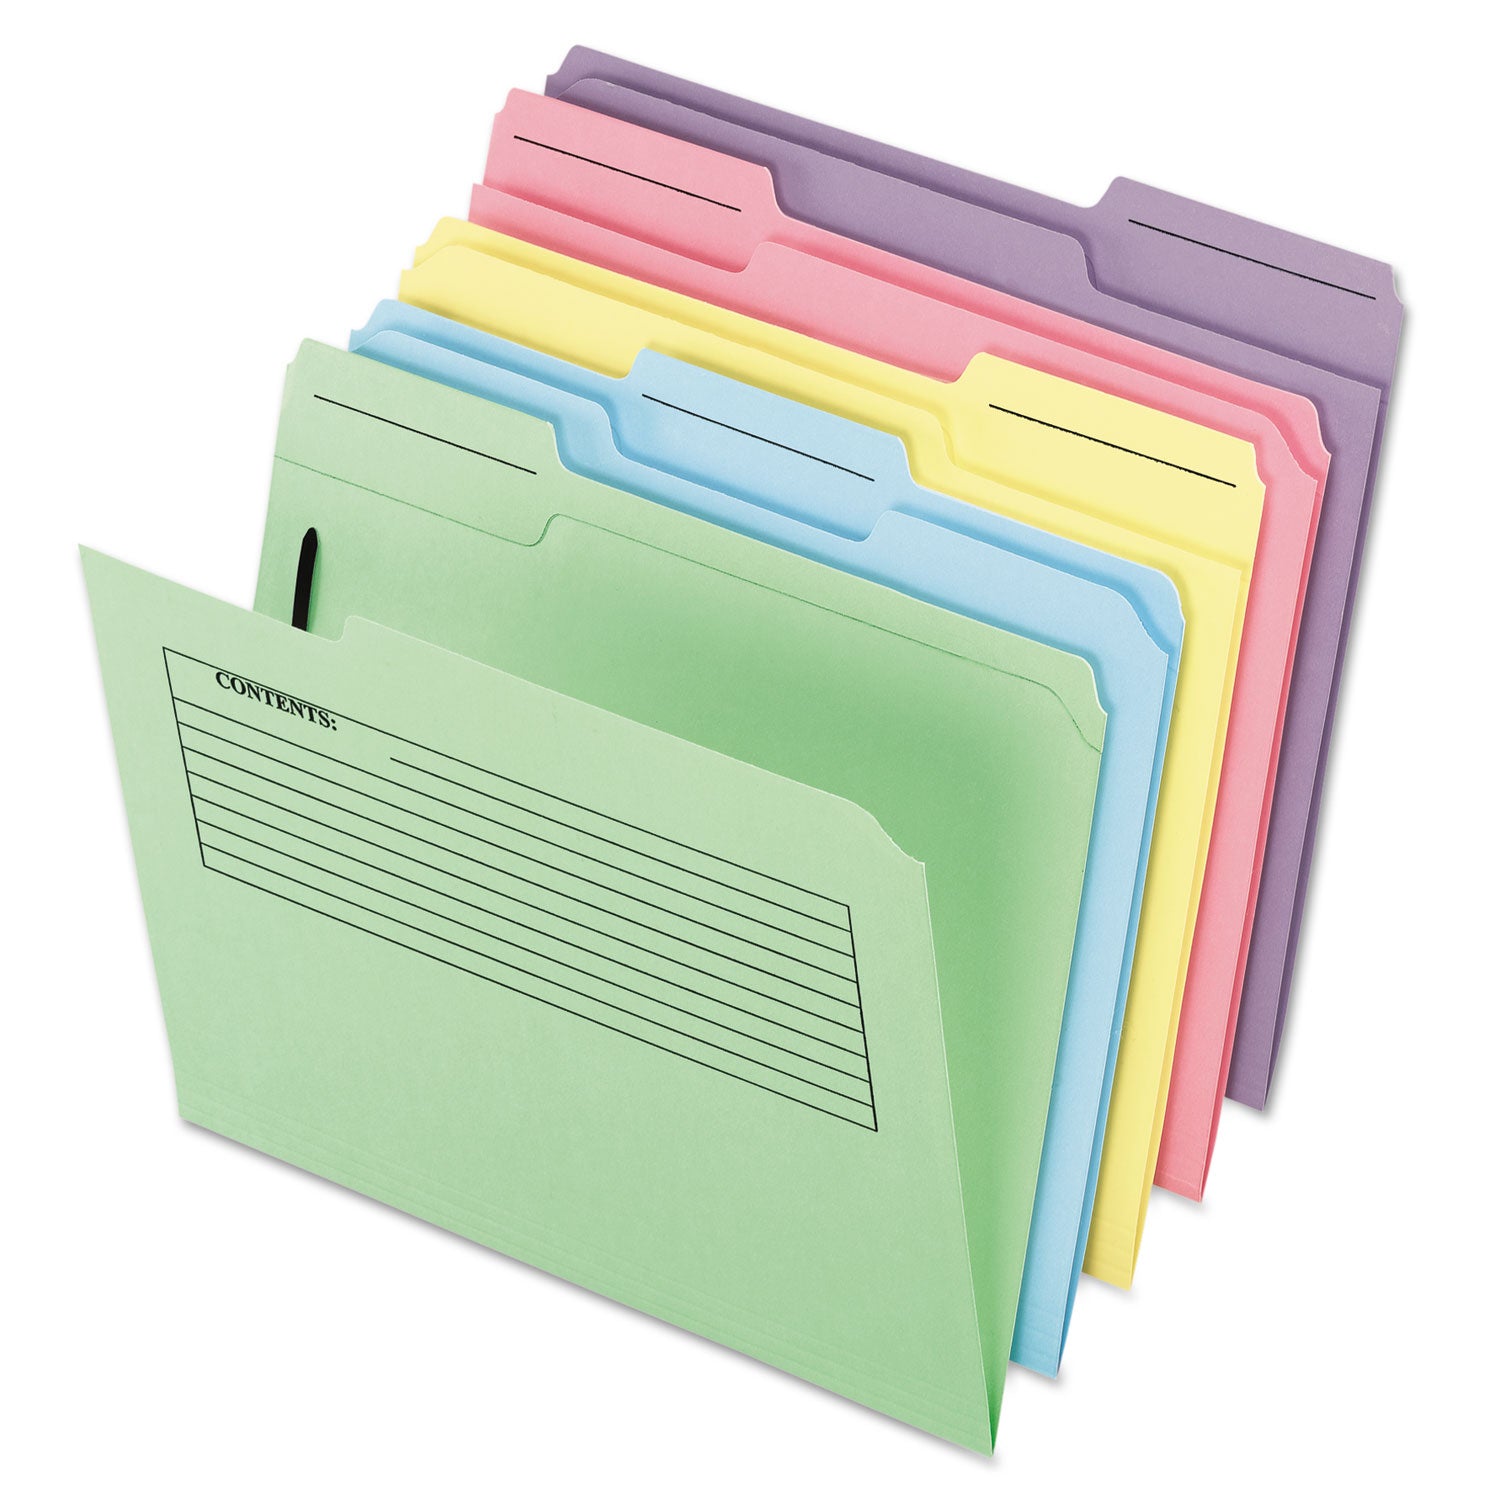 Printed Notes Fastener Folder, 1 Fastener, Letter Size, Assorted Colors, 30/Pack - 